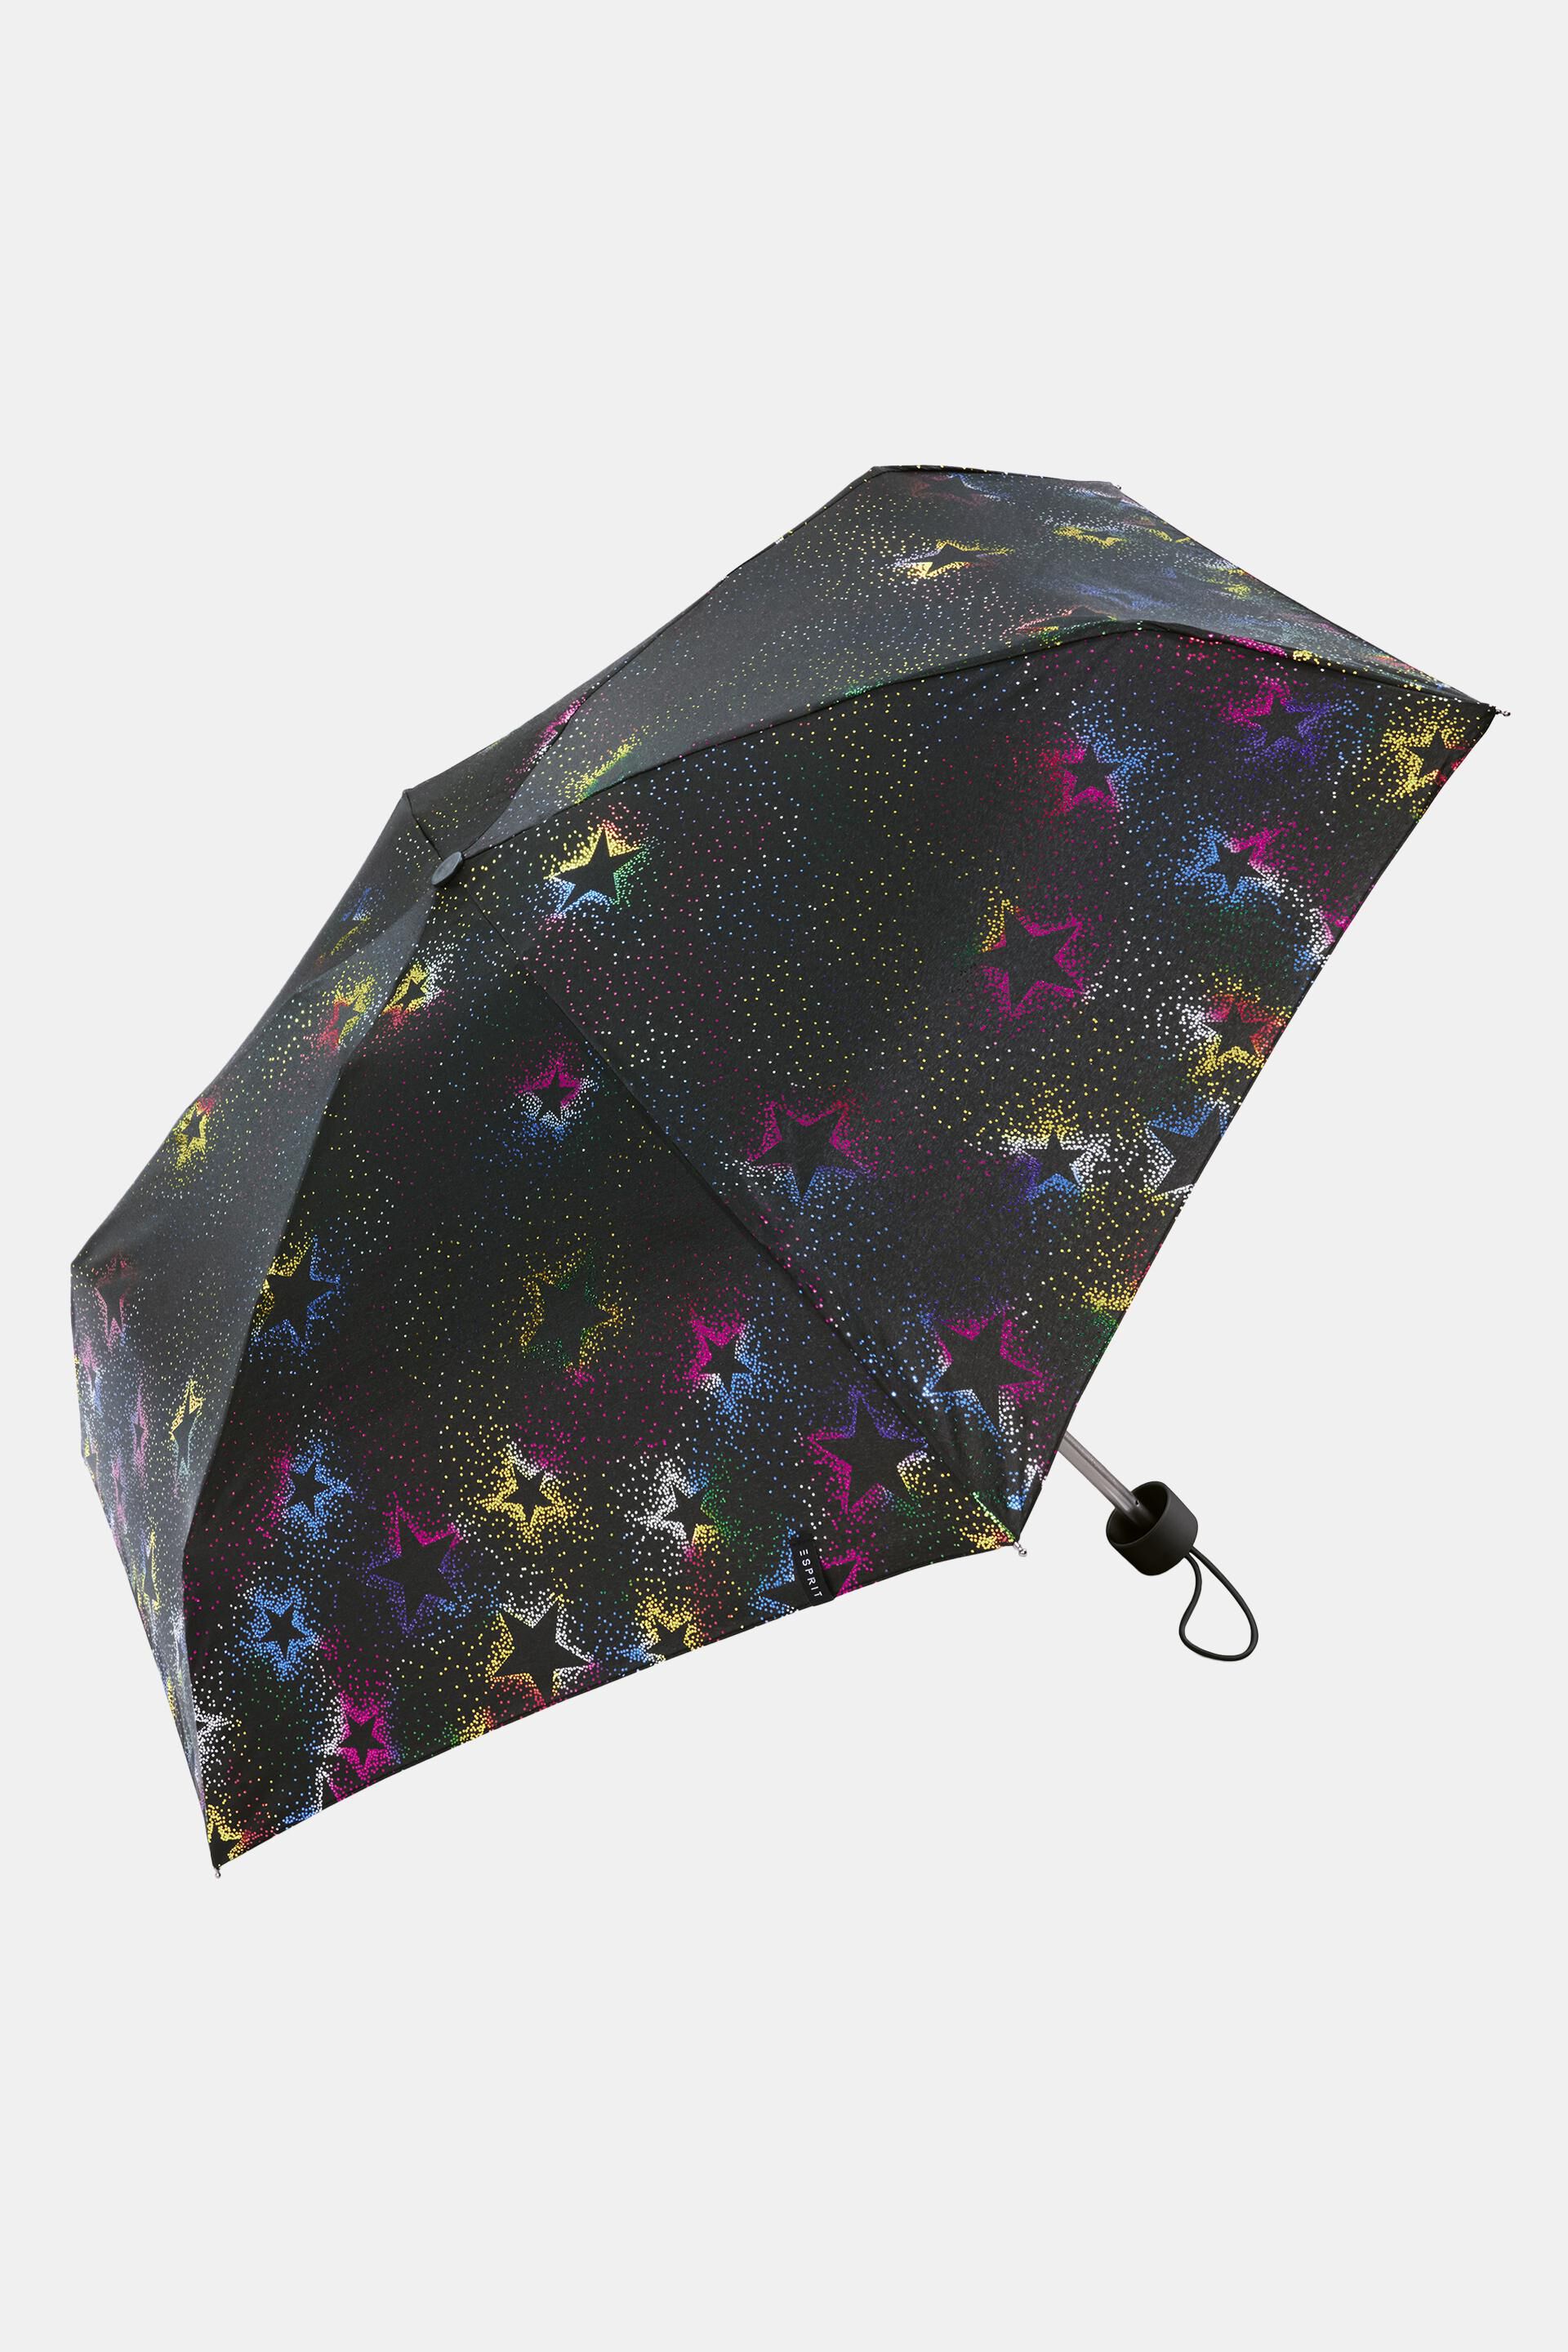 Mini-ombrello pieghevole, all'interno di una custodia